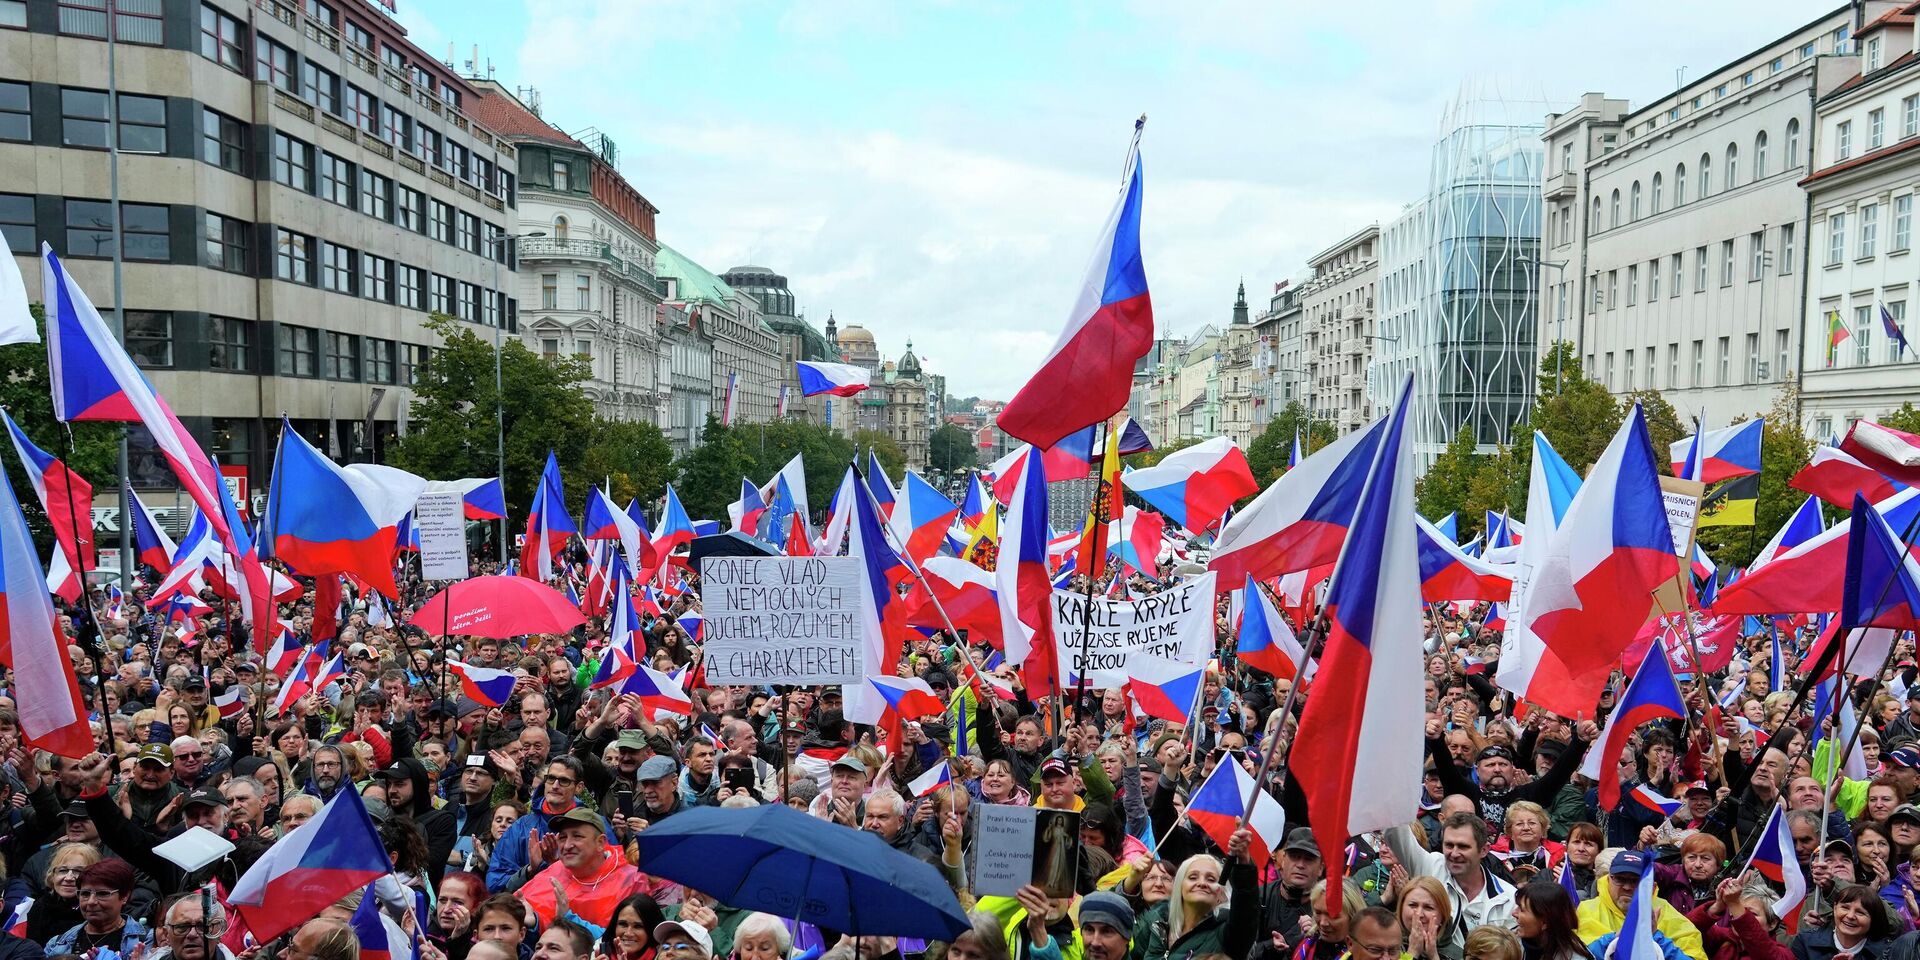 Участники антиправительственной демонстрации в Праге, Чешская Республика, 28 сентября 2022 года. - ИноСМИ, 1920, 09.11.2022